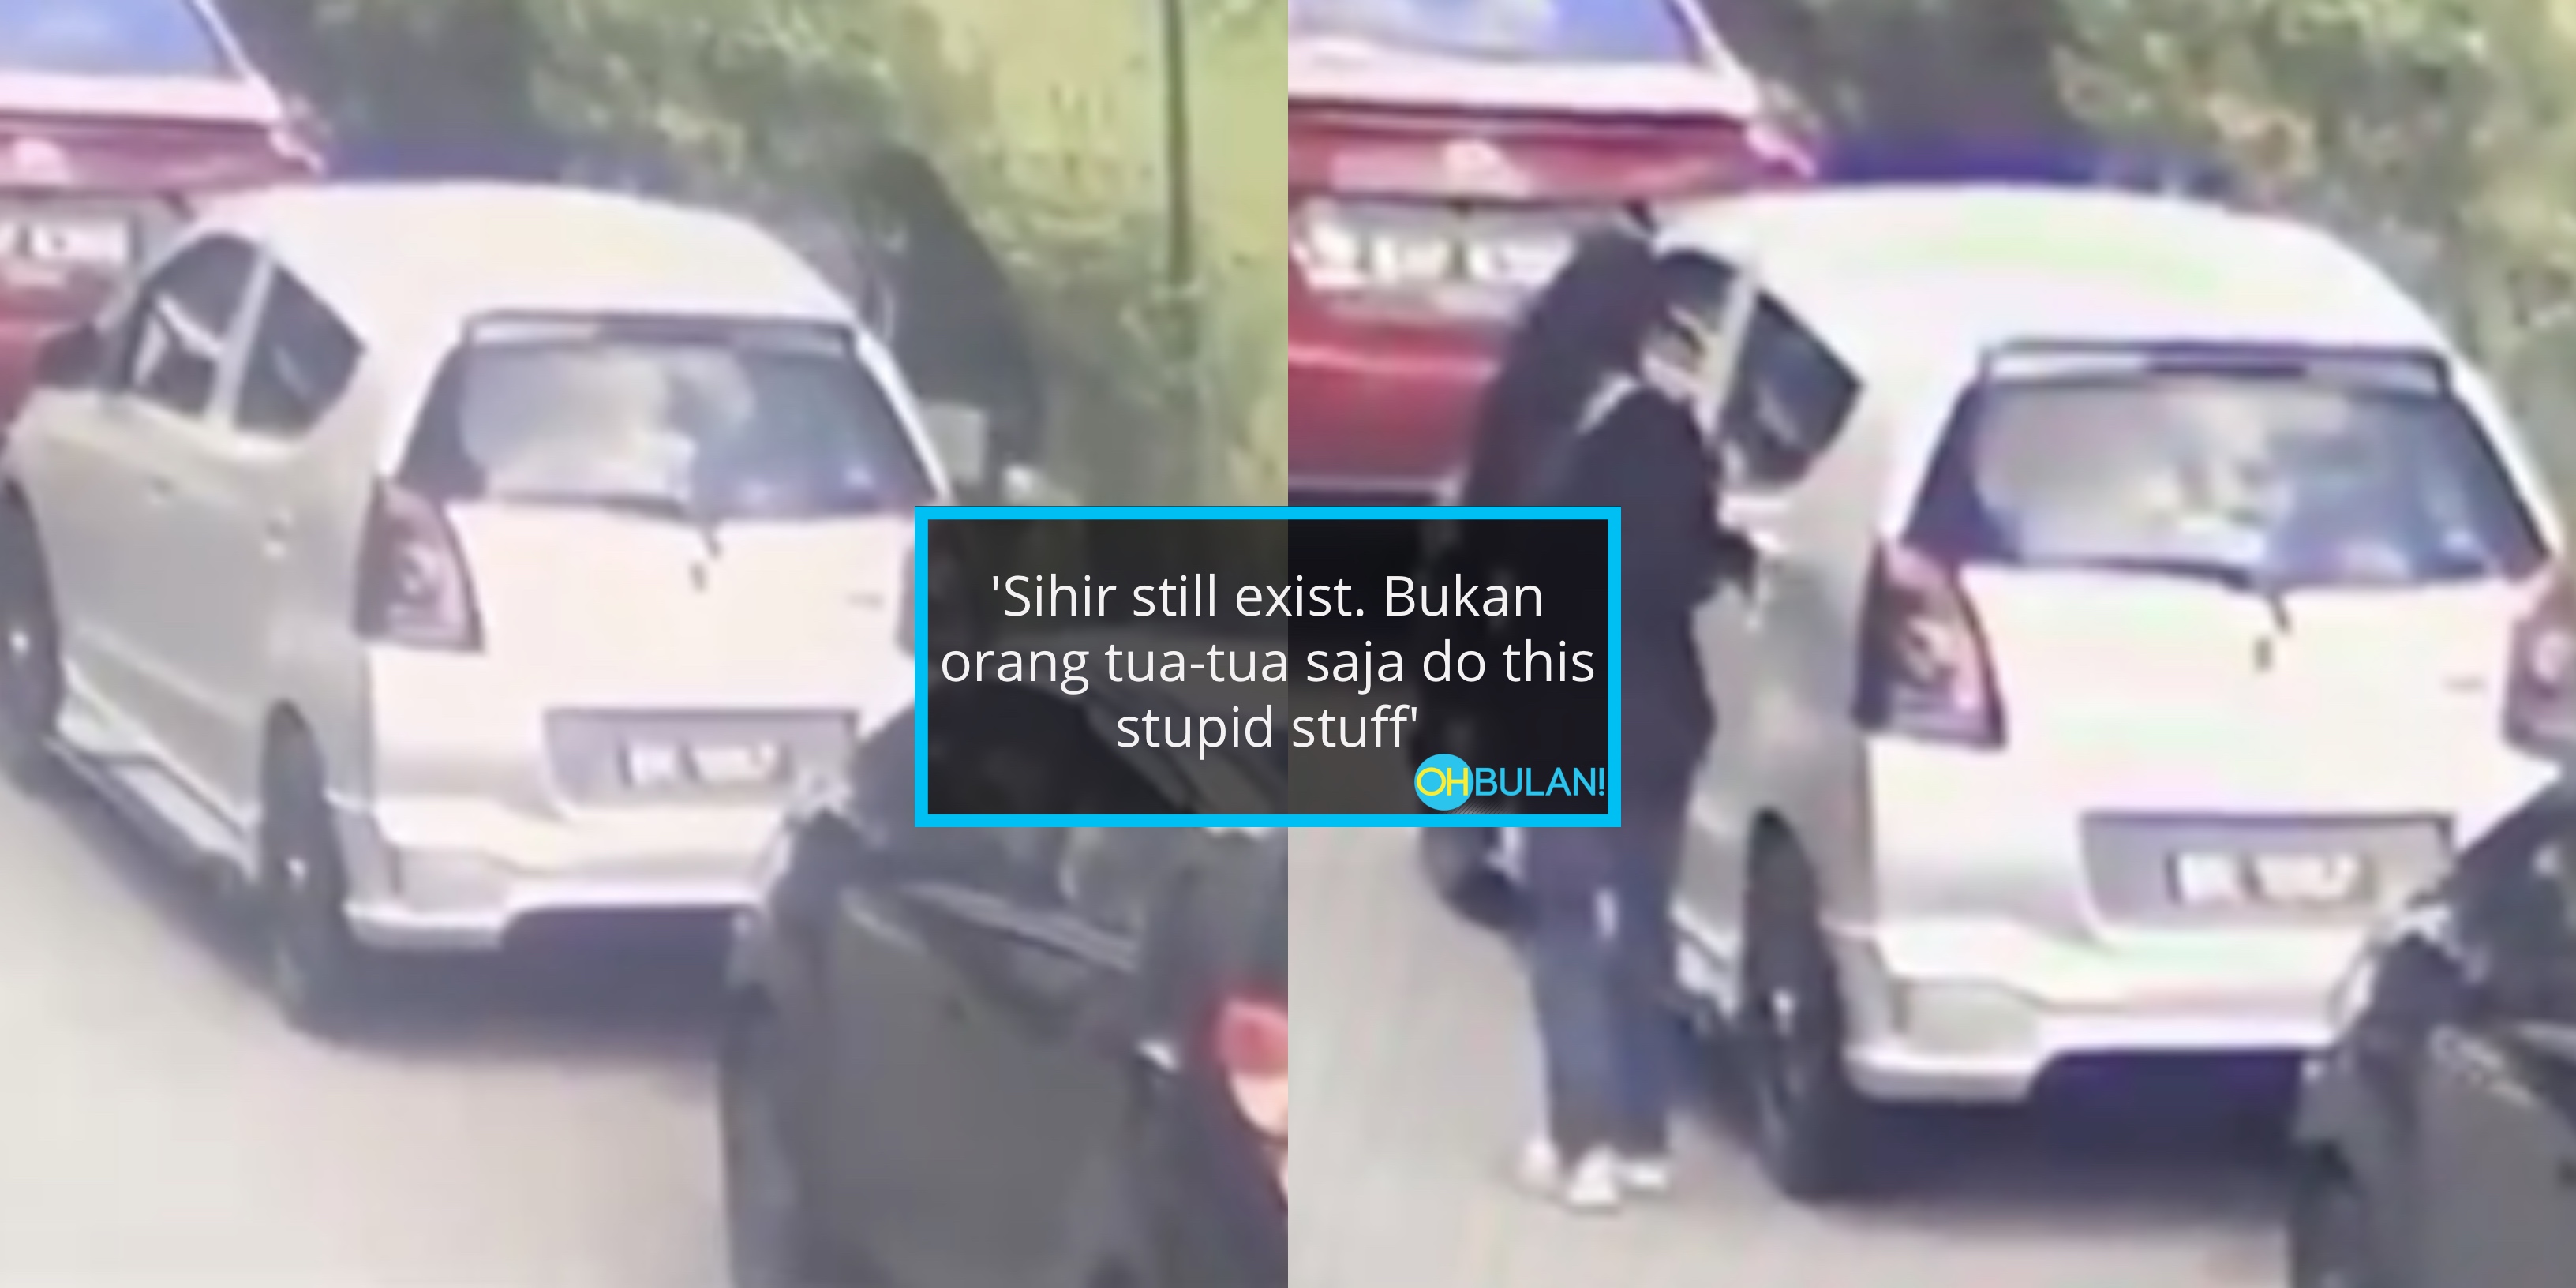 [VIDEO] Rasa ‘Panas’ Lepas Pegang Handle Pintu Kereta, Bila Periksa CCTV..